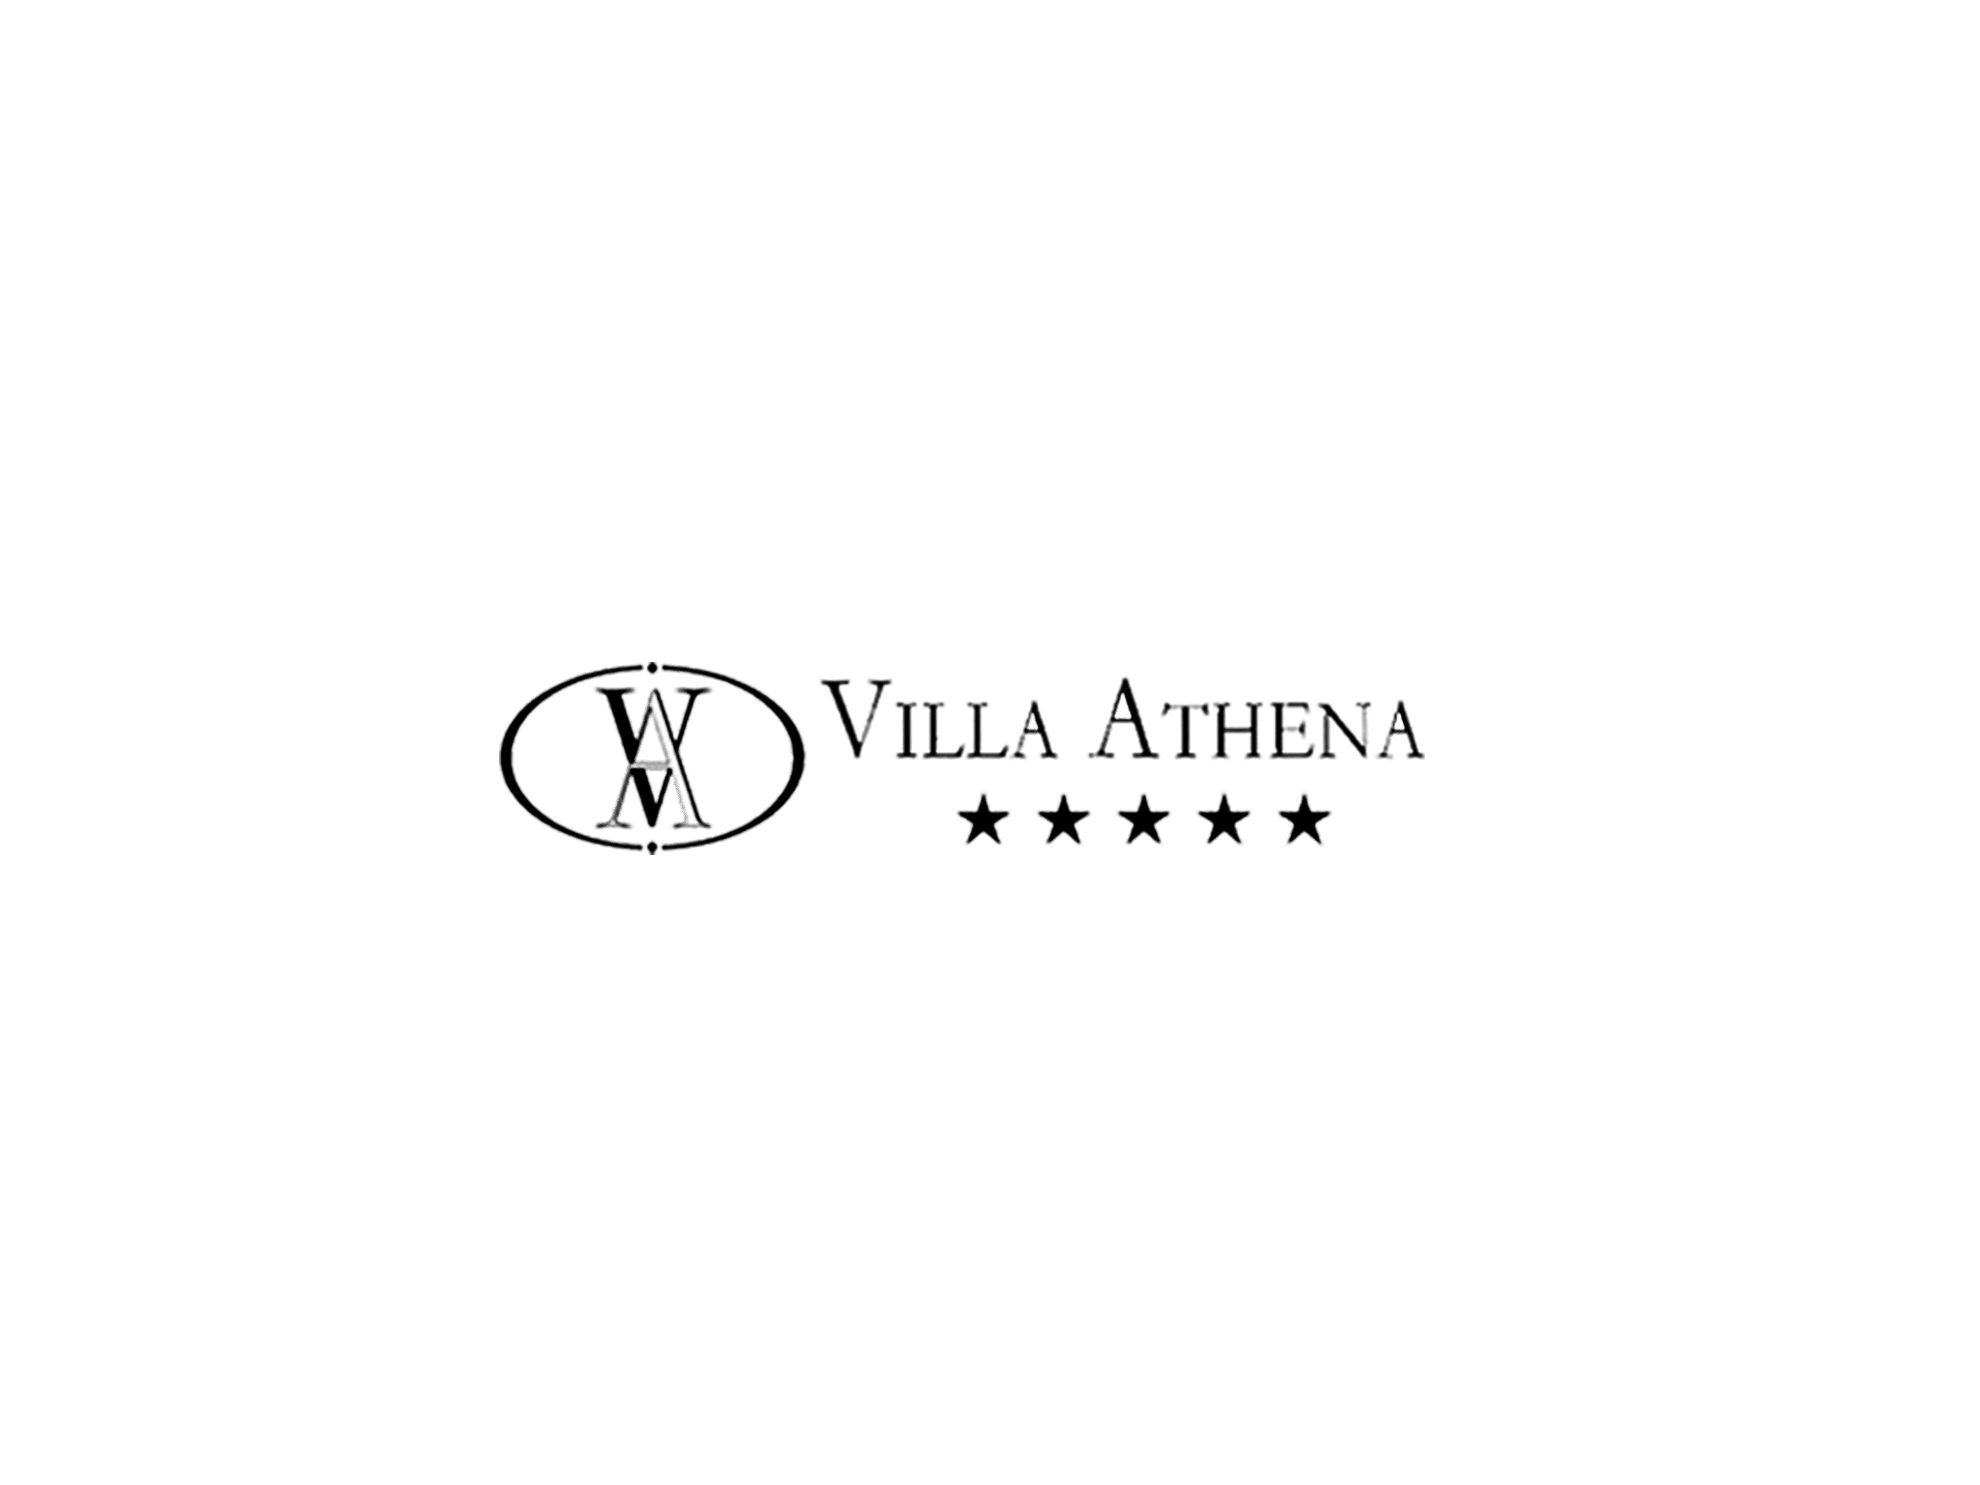 villa athena - info - agenzia di comunicazione Milano